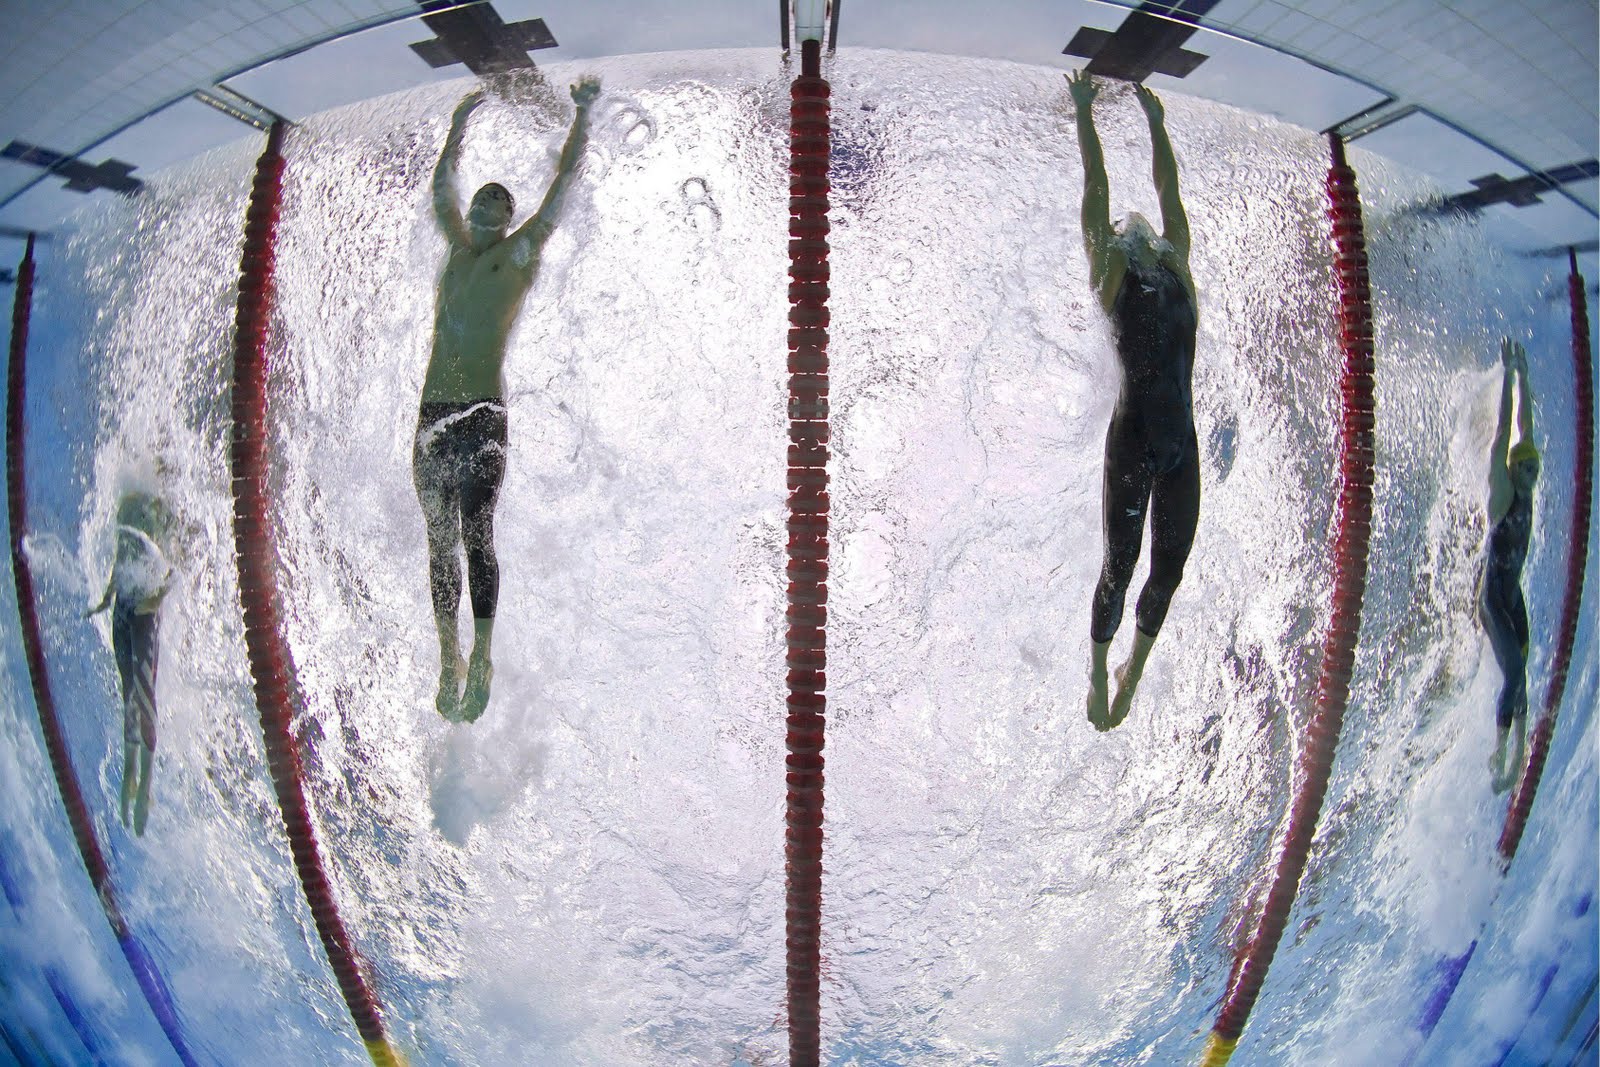 Csvic es el nadador de la derecha, con bañador completo